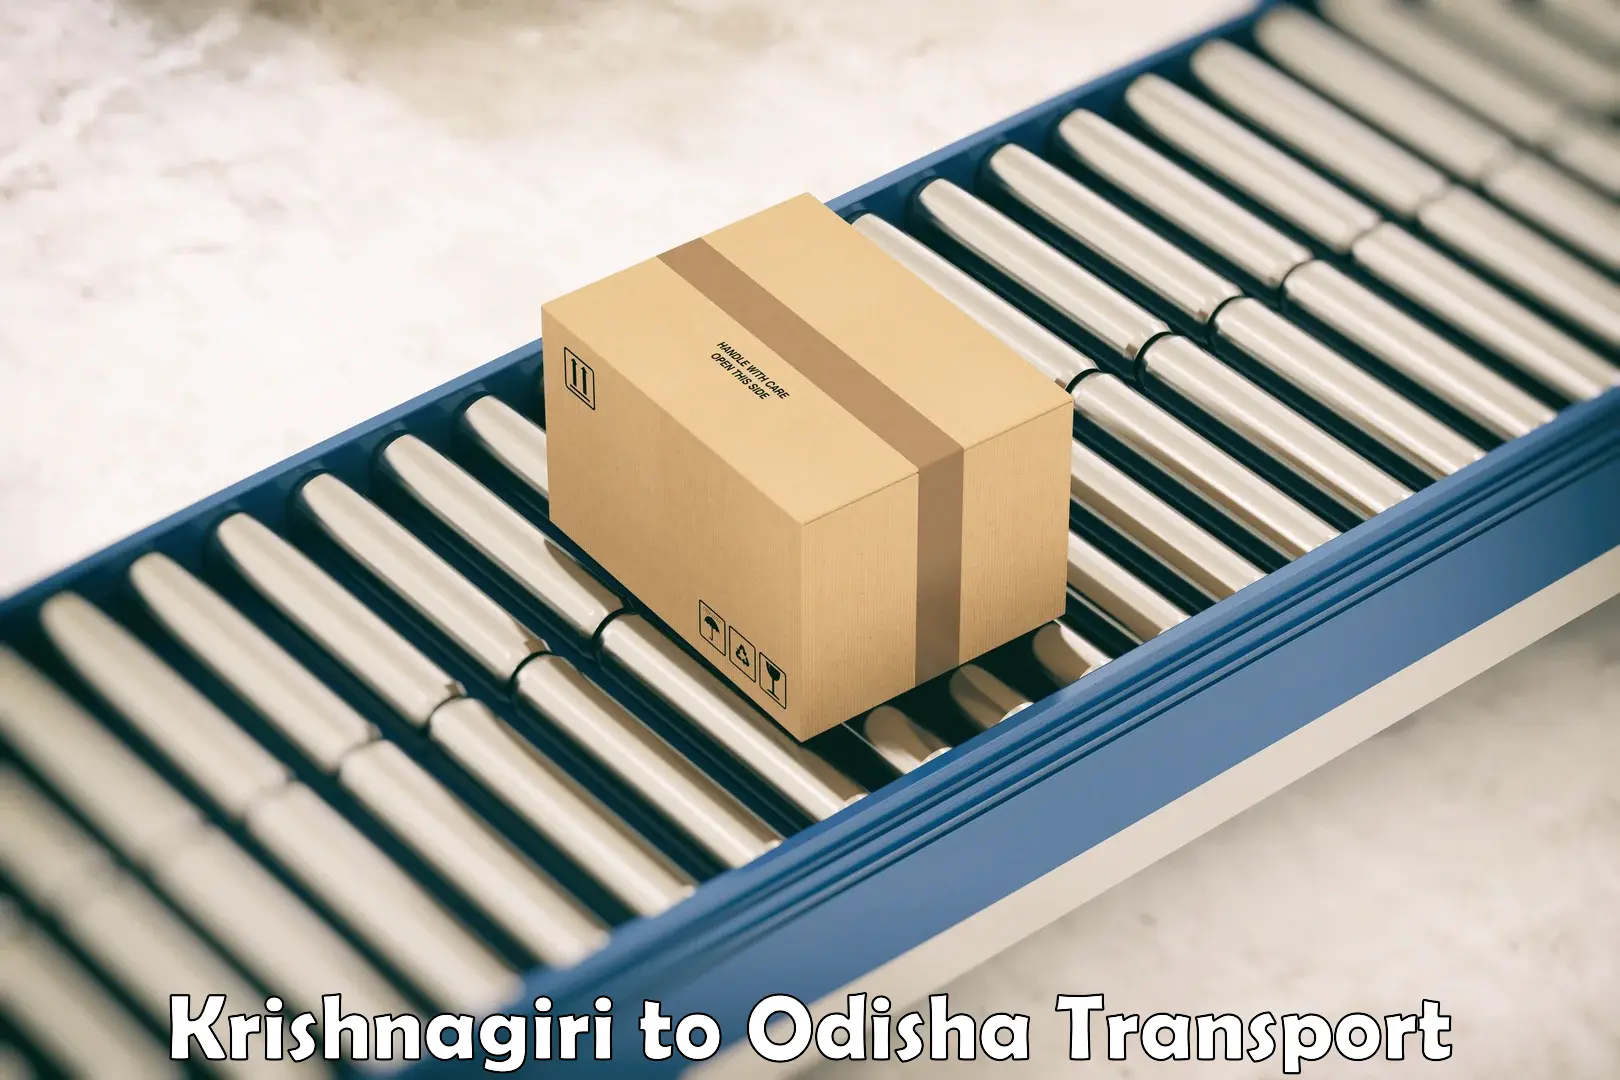 Lorry transport service Krishnagiri to Odisha